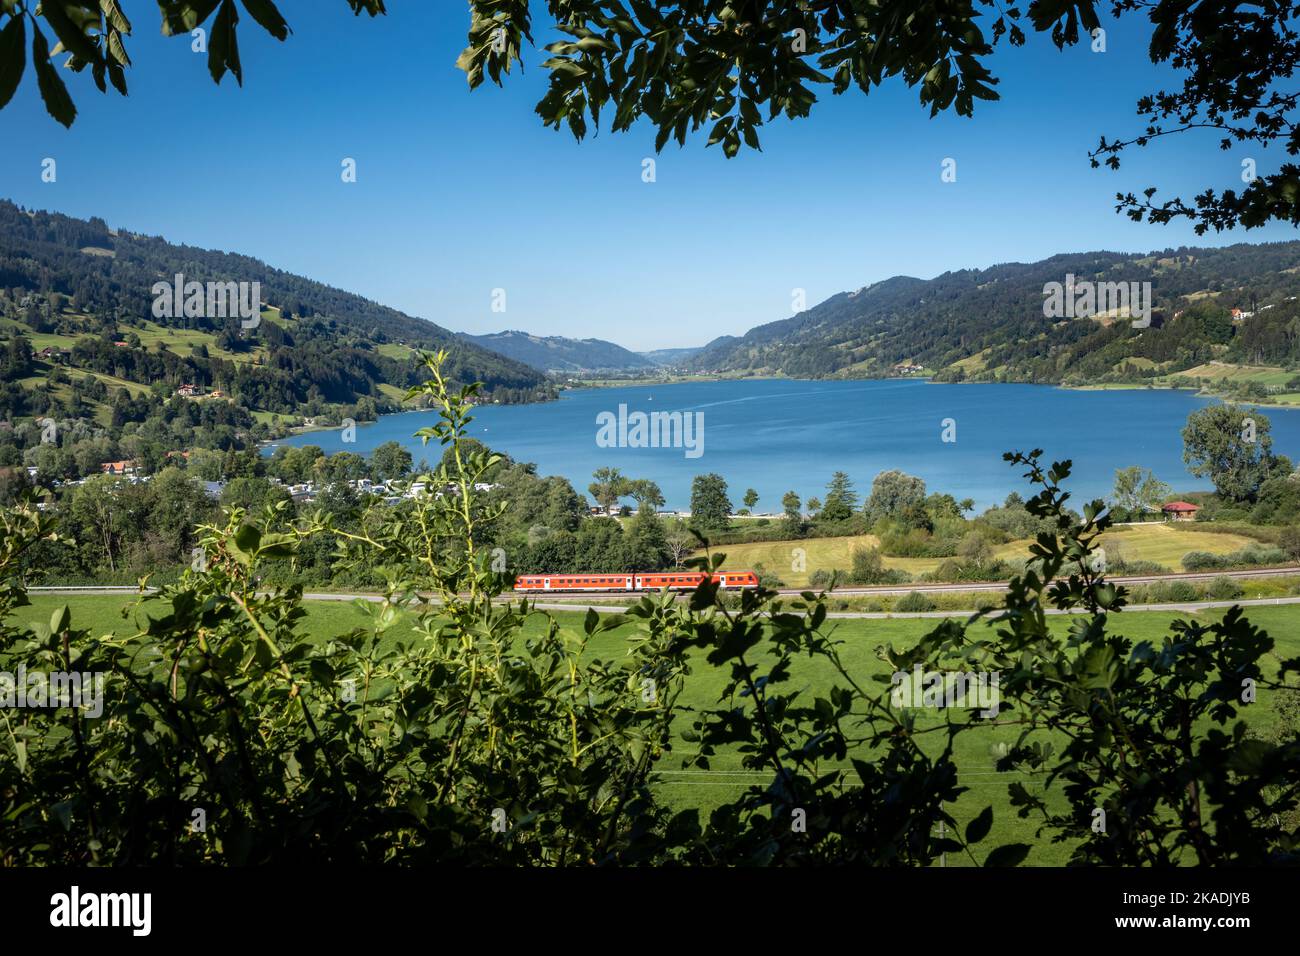 Montagnes et panorama sur le lac de Grosser Alpsee dans les Alpes bavaroises près d'Immenstadt im Allgau, Allemagne. Train rouge en premier plan. Banque D'Images